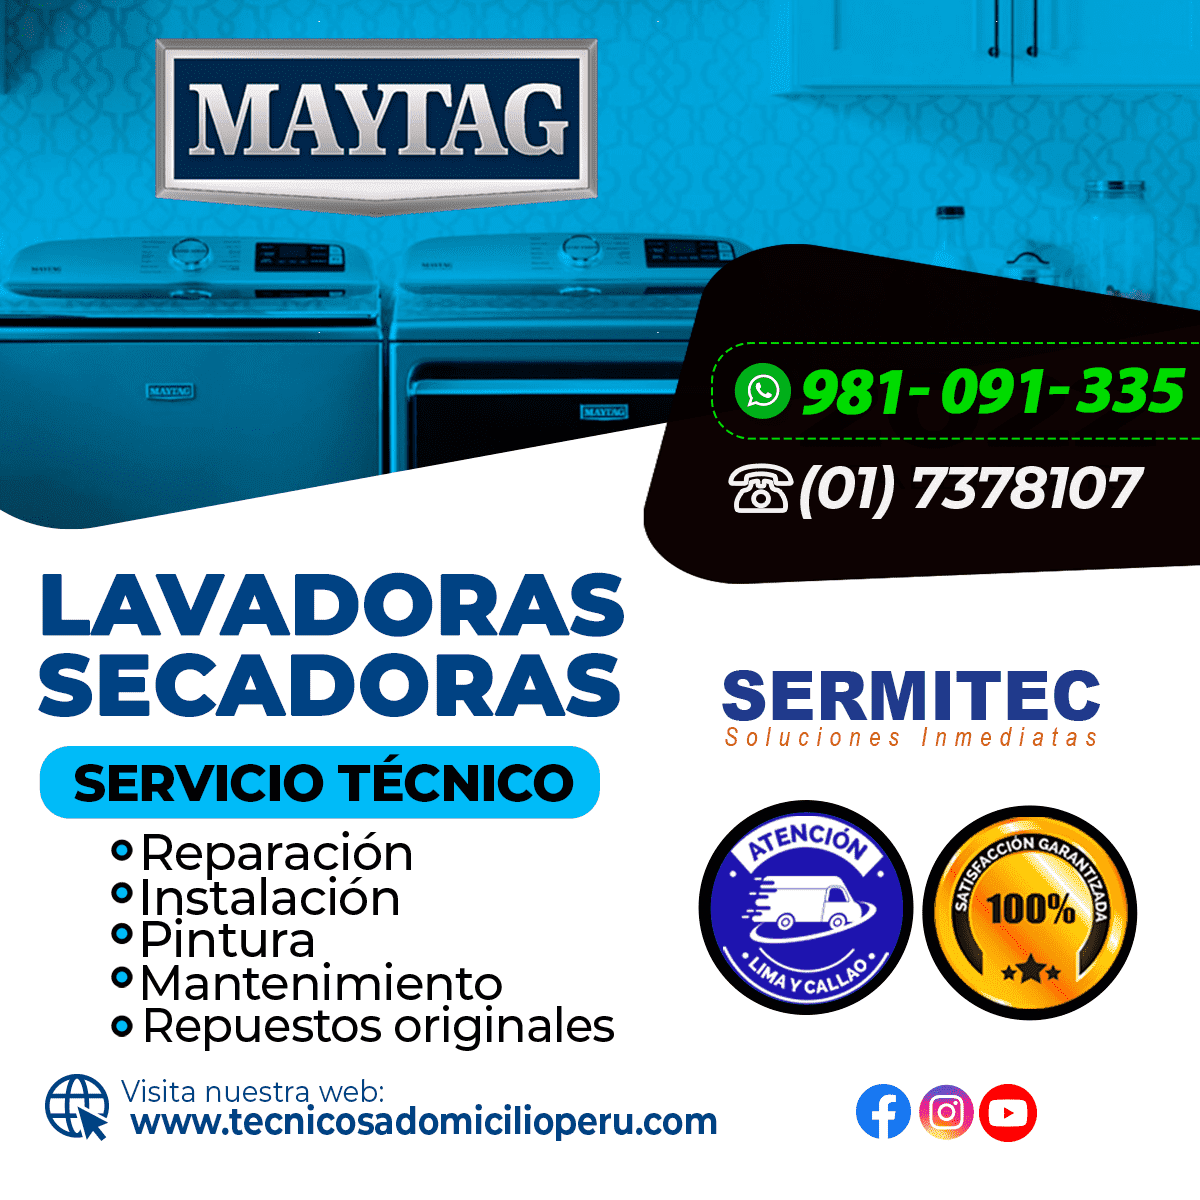 Maytag Reparación de Lavadoras 981091335 SANTIAGO DE SURCO